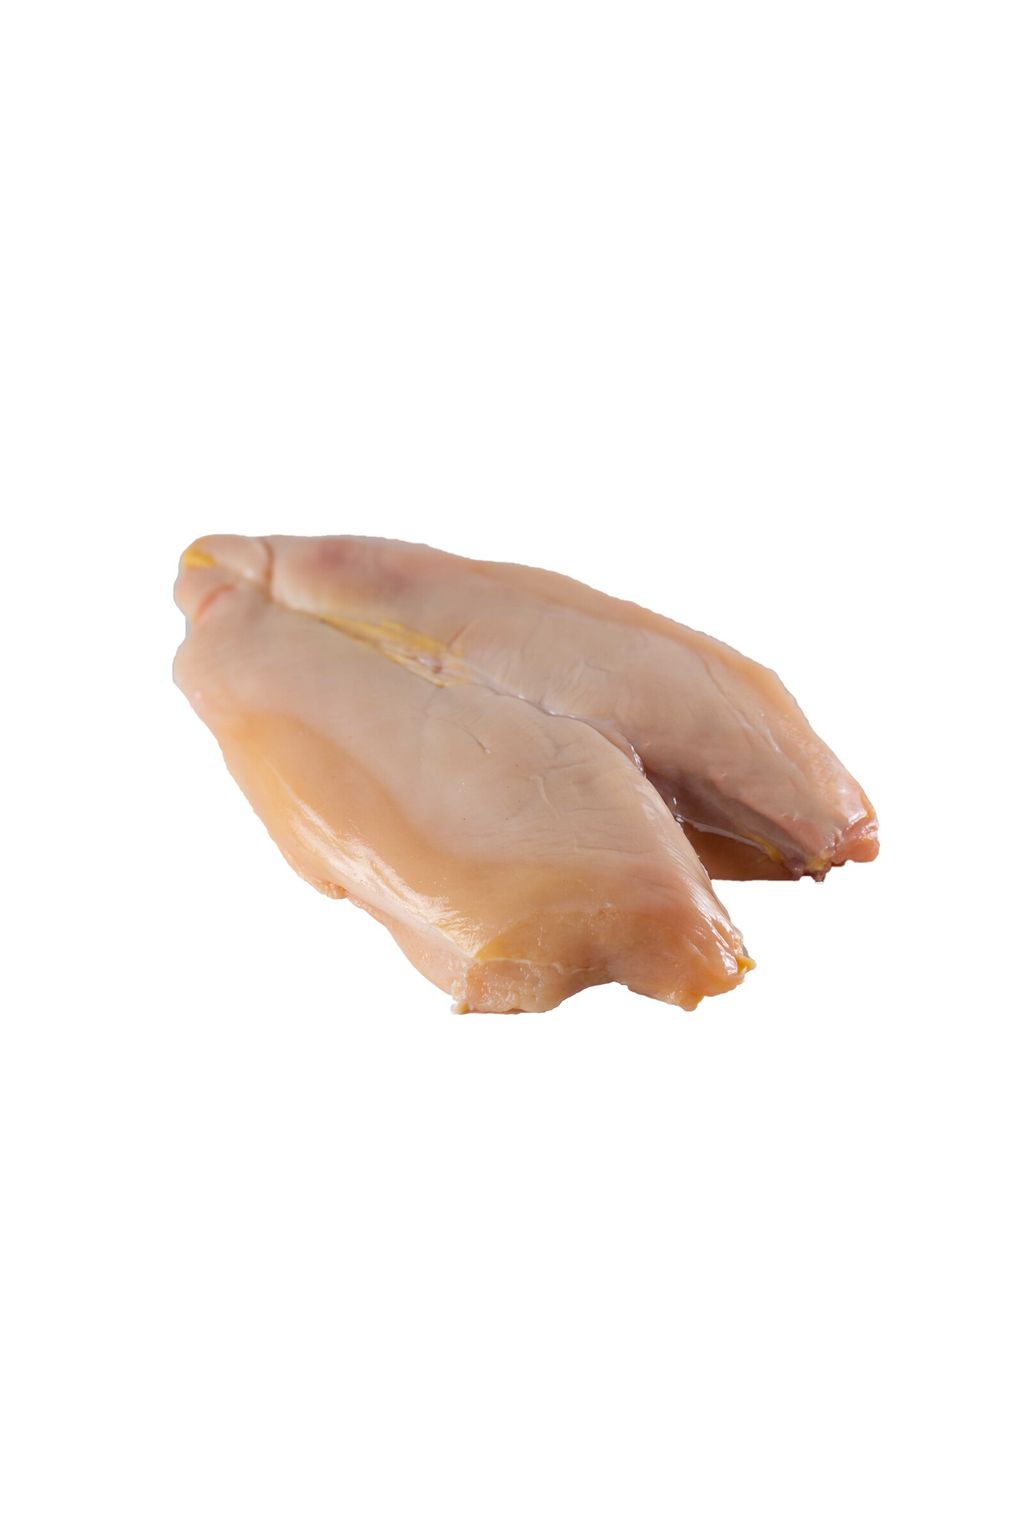 Chicken Breast (White).jpg